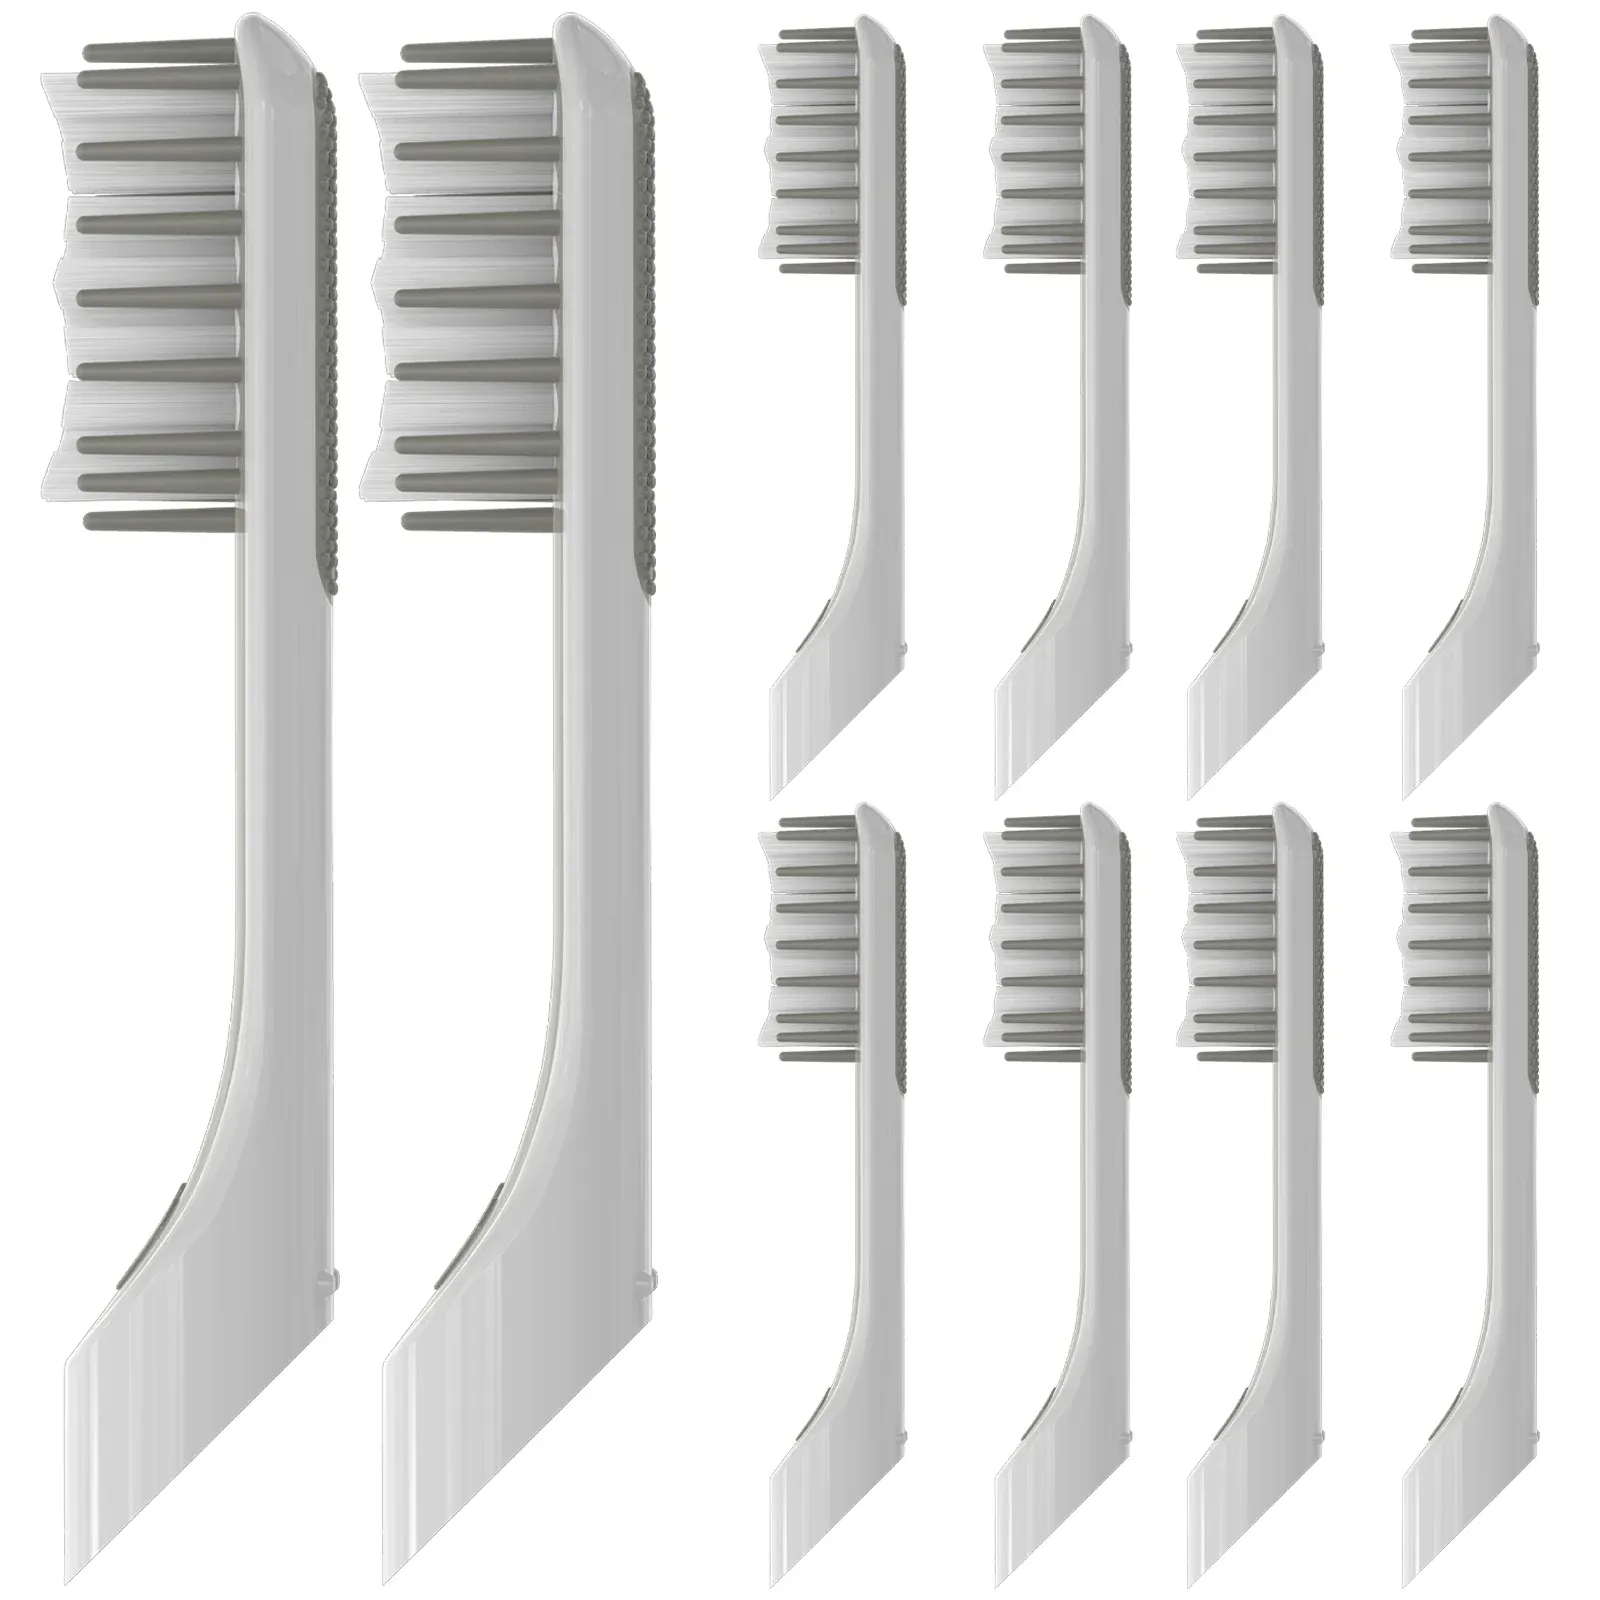 Brosse à dents compatible avec les têtes de remplacement de brosse à dents électriques, pour la brosse à dents électrique quip, 10 pack